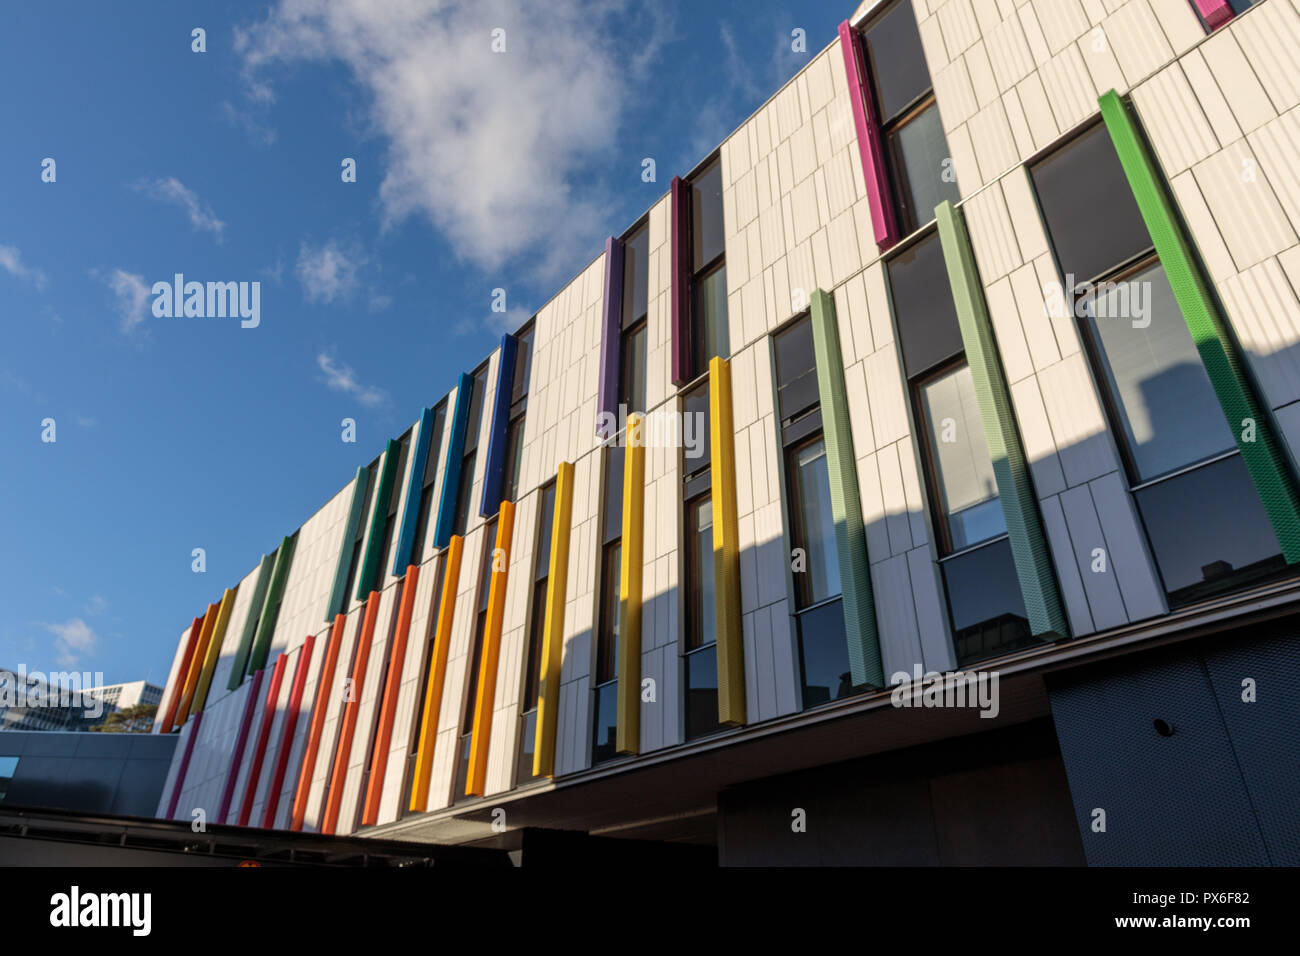 Helsinki Children's Hospital abrió para los pacientes el 17 de septiembre de 2018. El moderno y práctico edificio tiene fachada colorida. Foto de stock